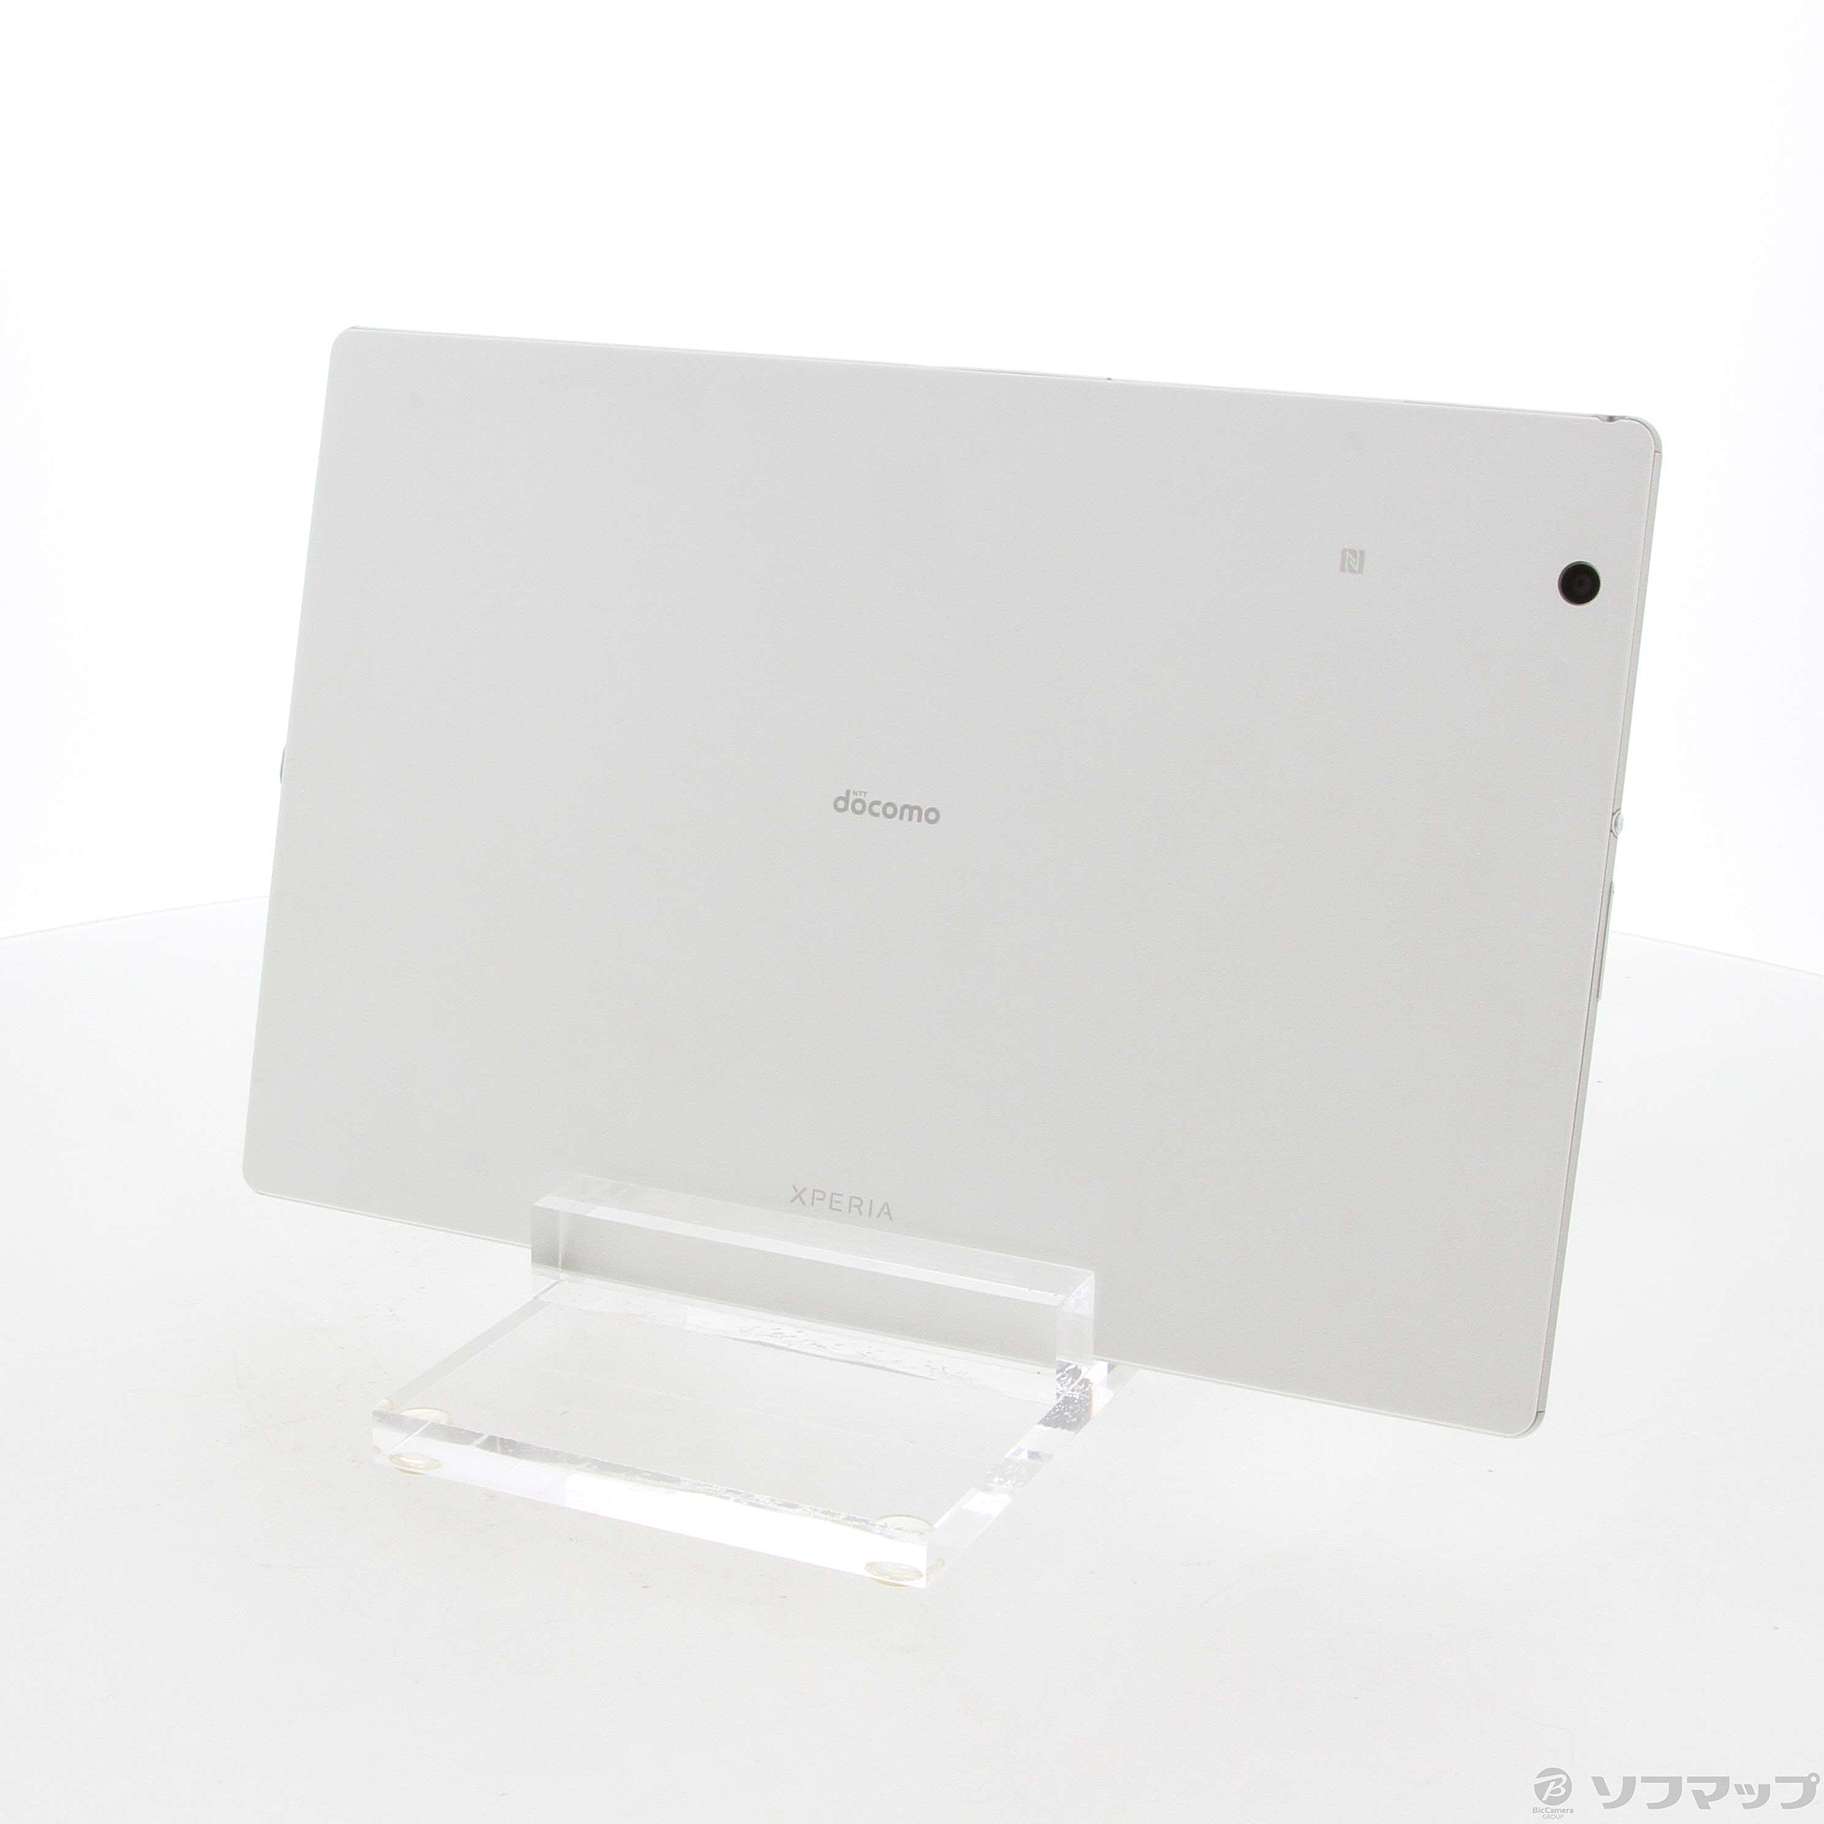 SONY Xperia Z4 Tablet SO-05G BLACK